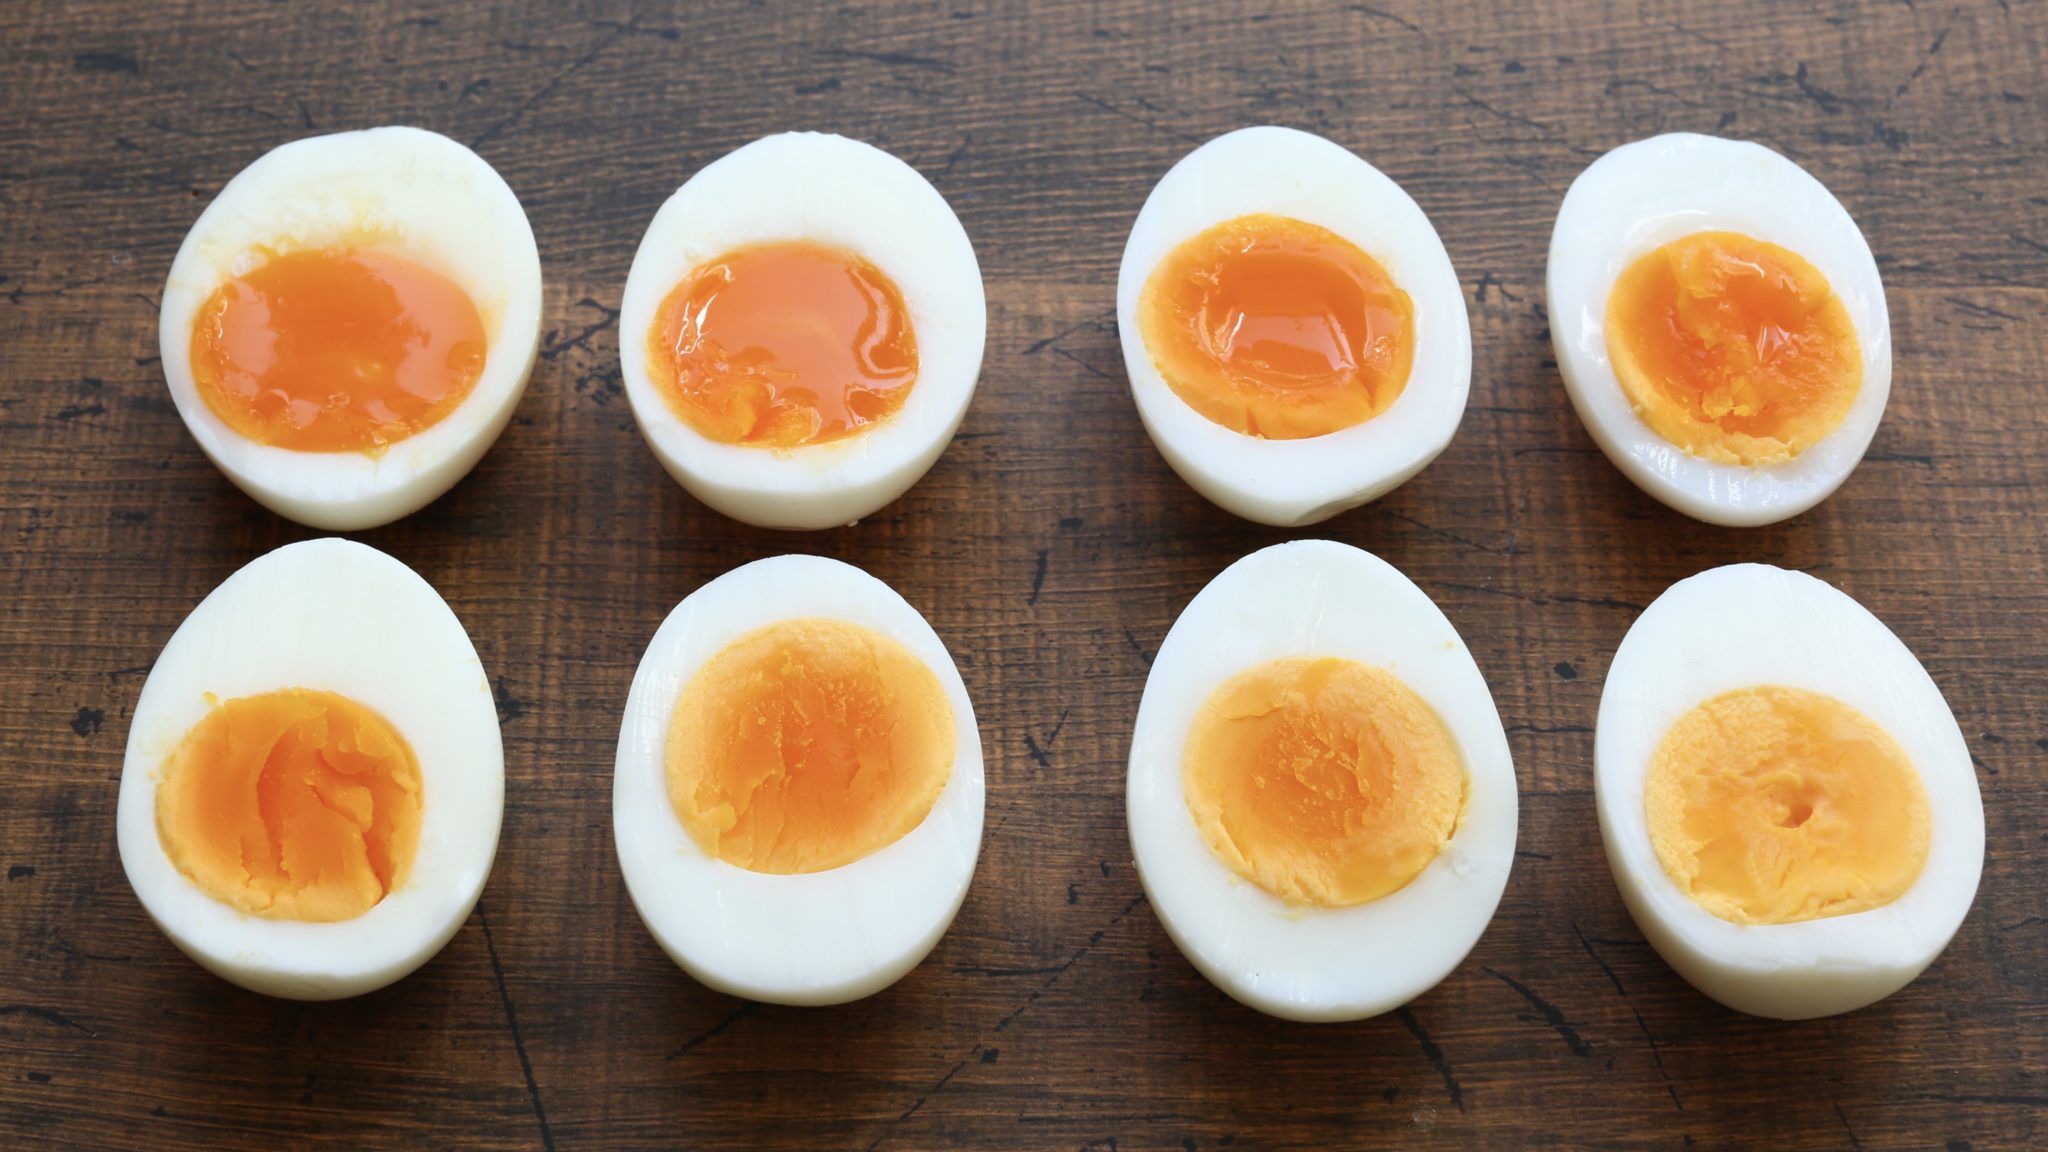 ゆで卵の作り方 茹で時間は何分 半熟や固ゆでの簡単基本レシピ やまでら くみこ のレシピ